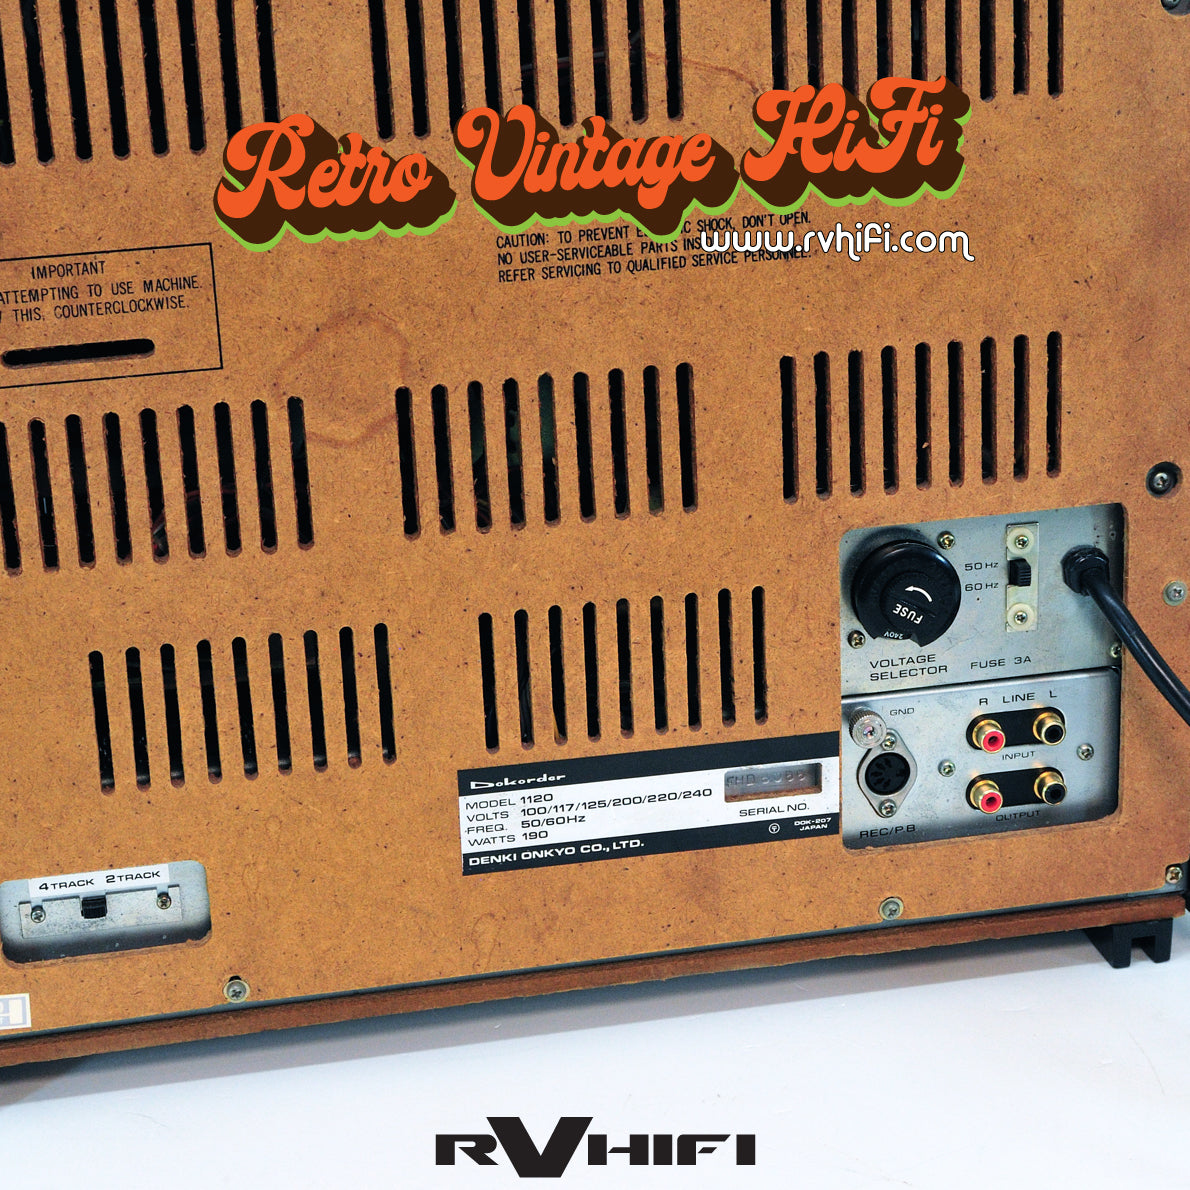 Buy Dokorder 1120 4-Track Stereo/Mono Tape Deck Online in Australia – RV  HIFI